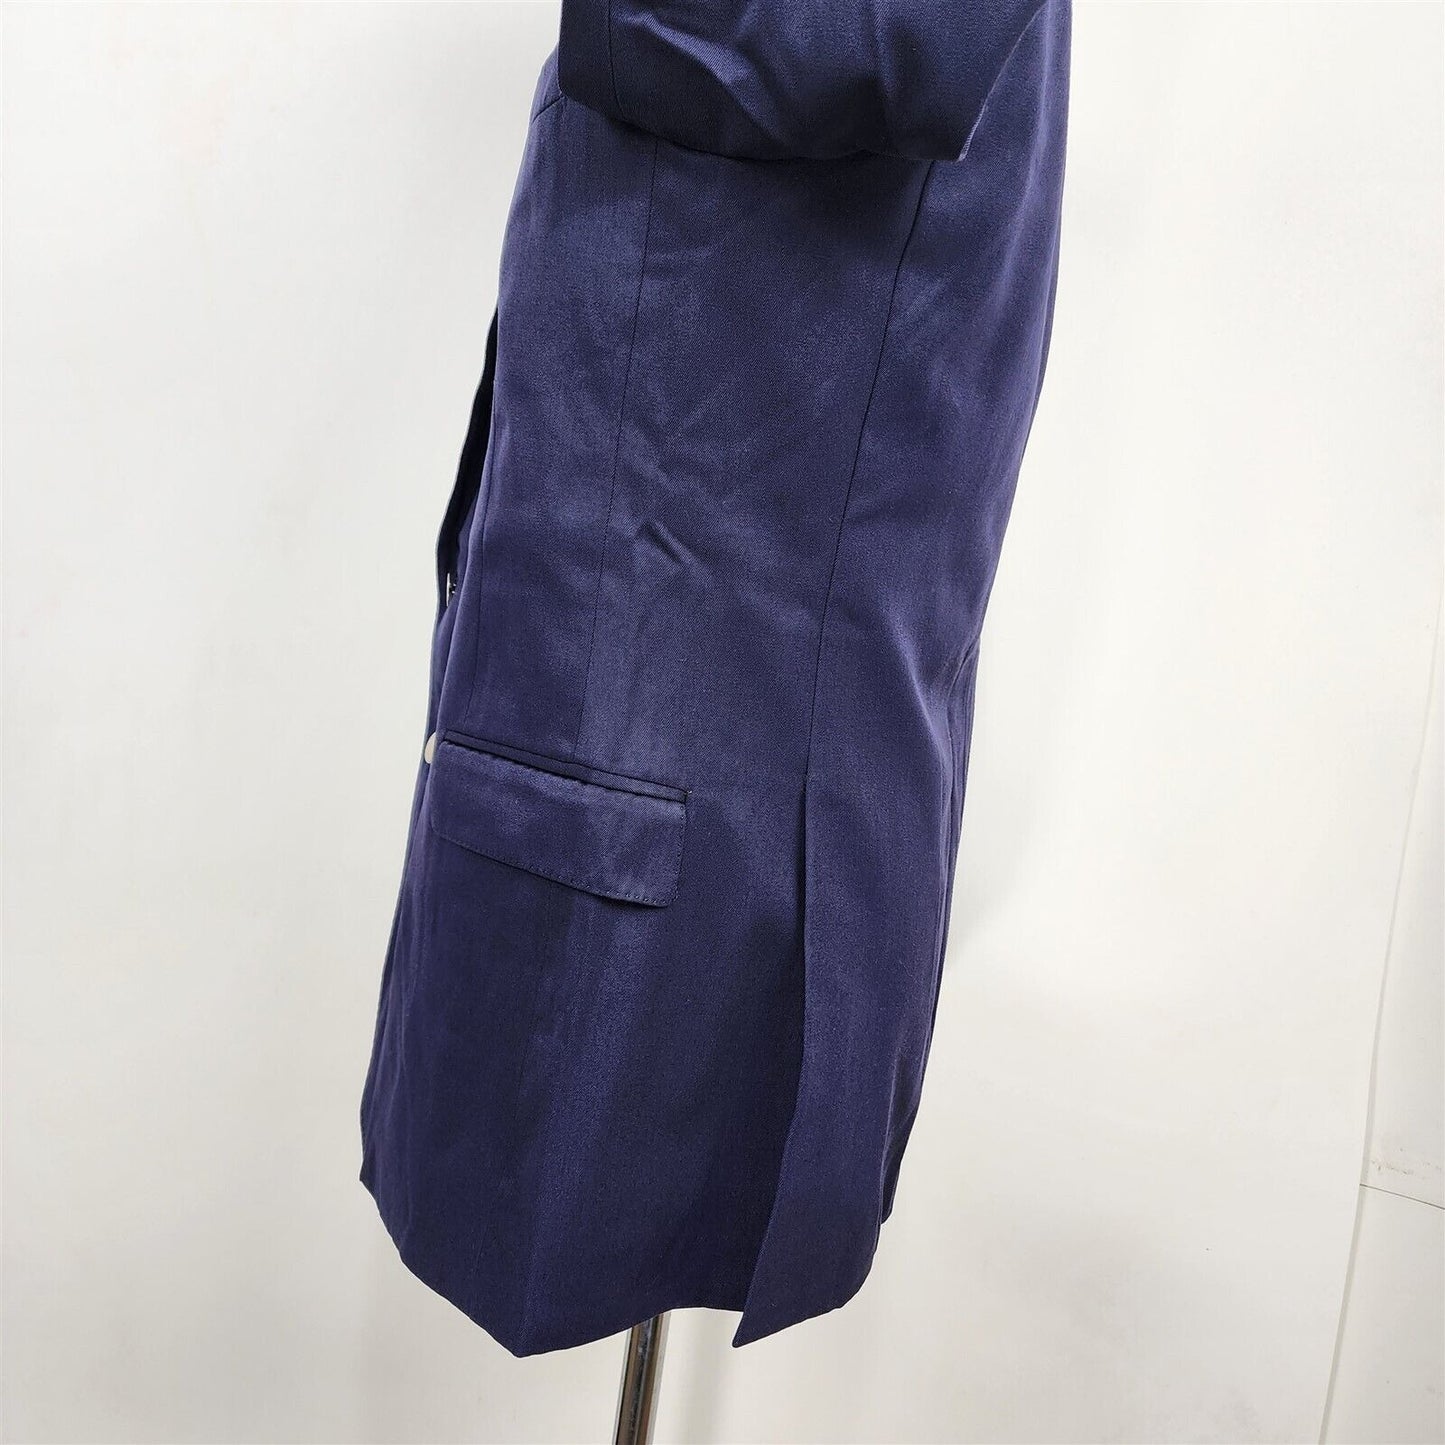 Vintage Navy Blue Wool 2 Button Suit Jacket Sport Coat Size 40 Reg